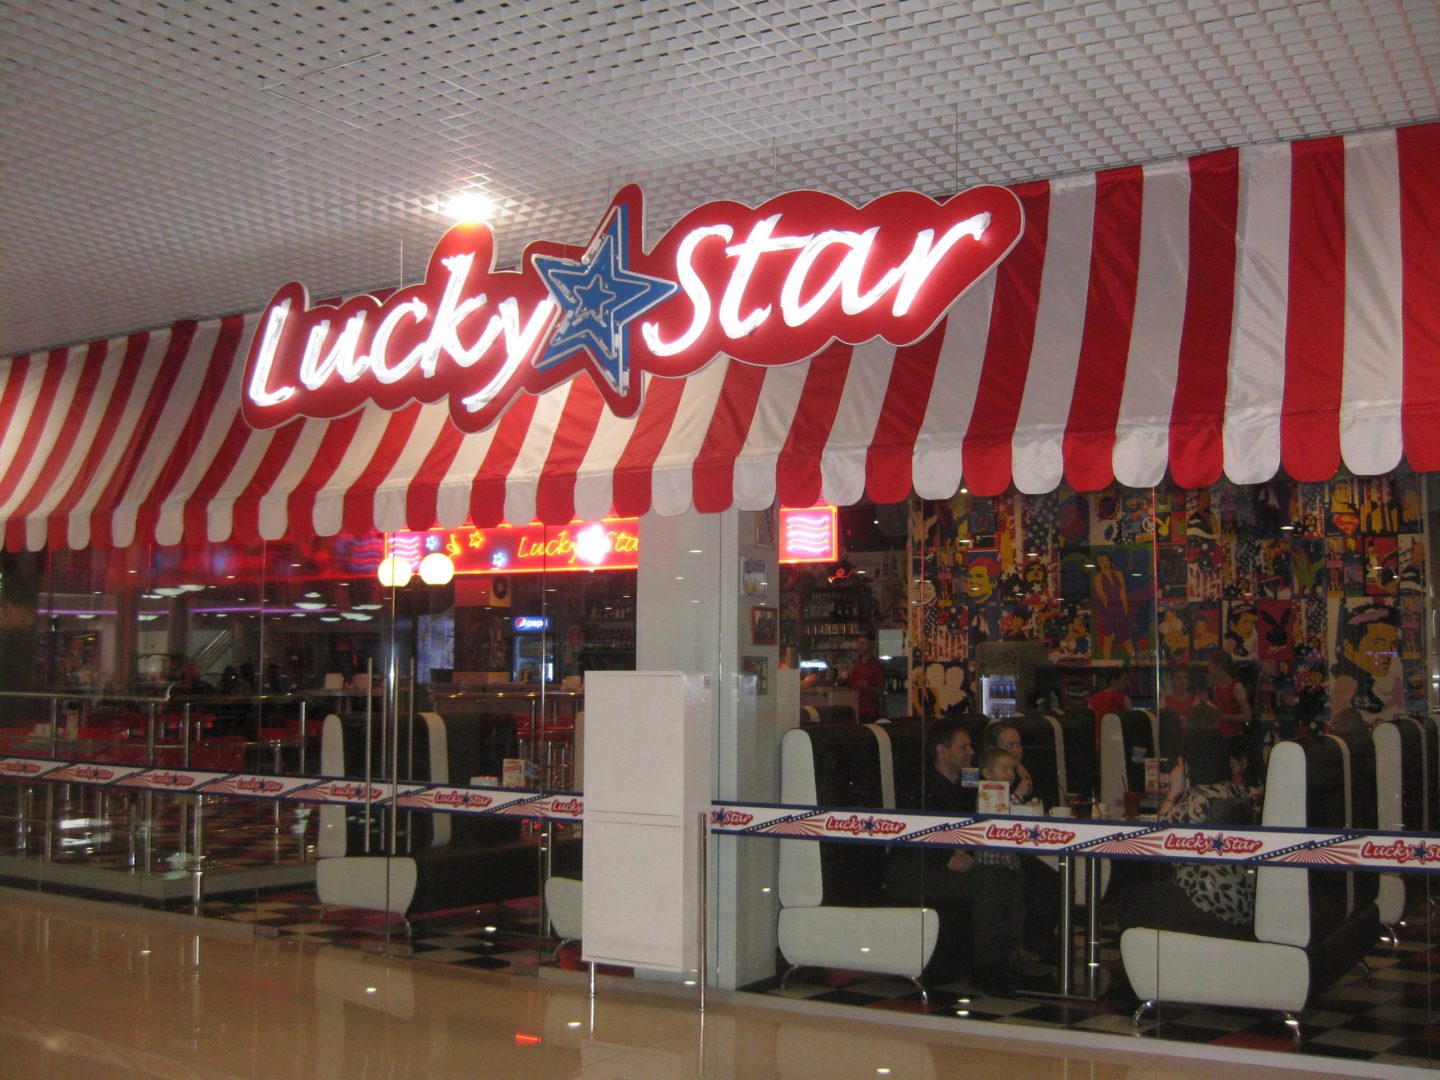 "Lucky Star"